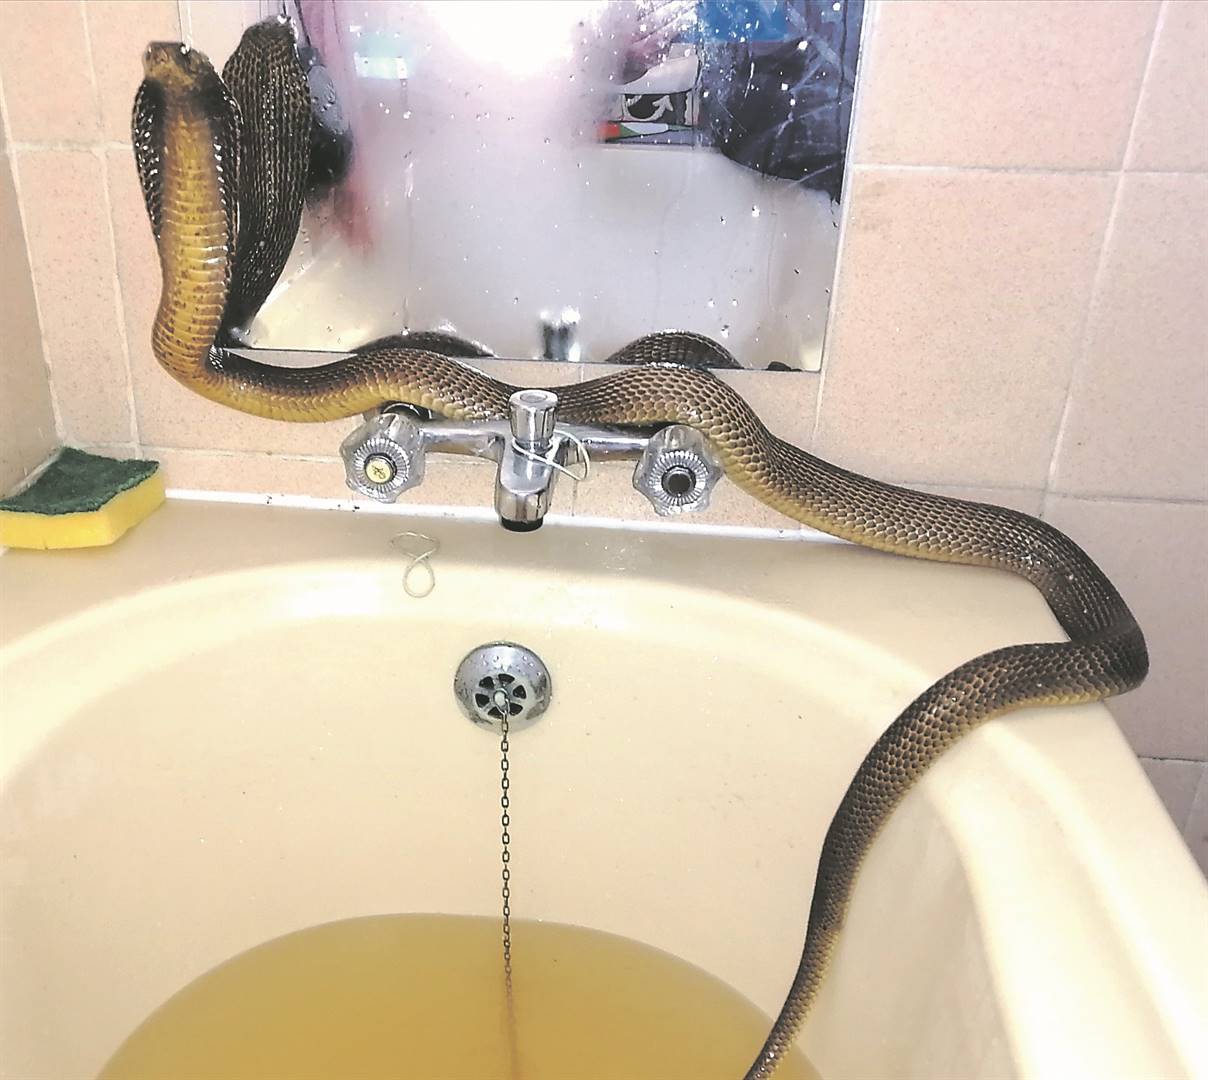 Bà Tossie về nhà và phát hiện con rắn do chồng thả vào bồn tắm (ảnh: Daily Star)